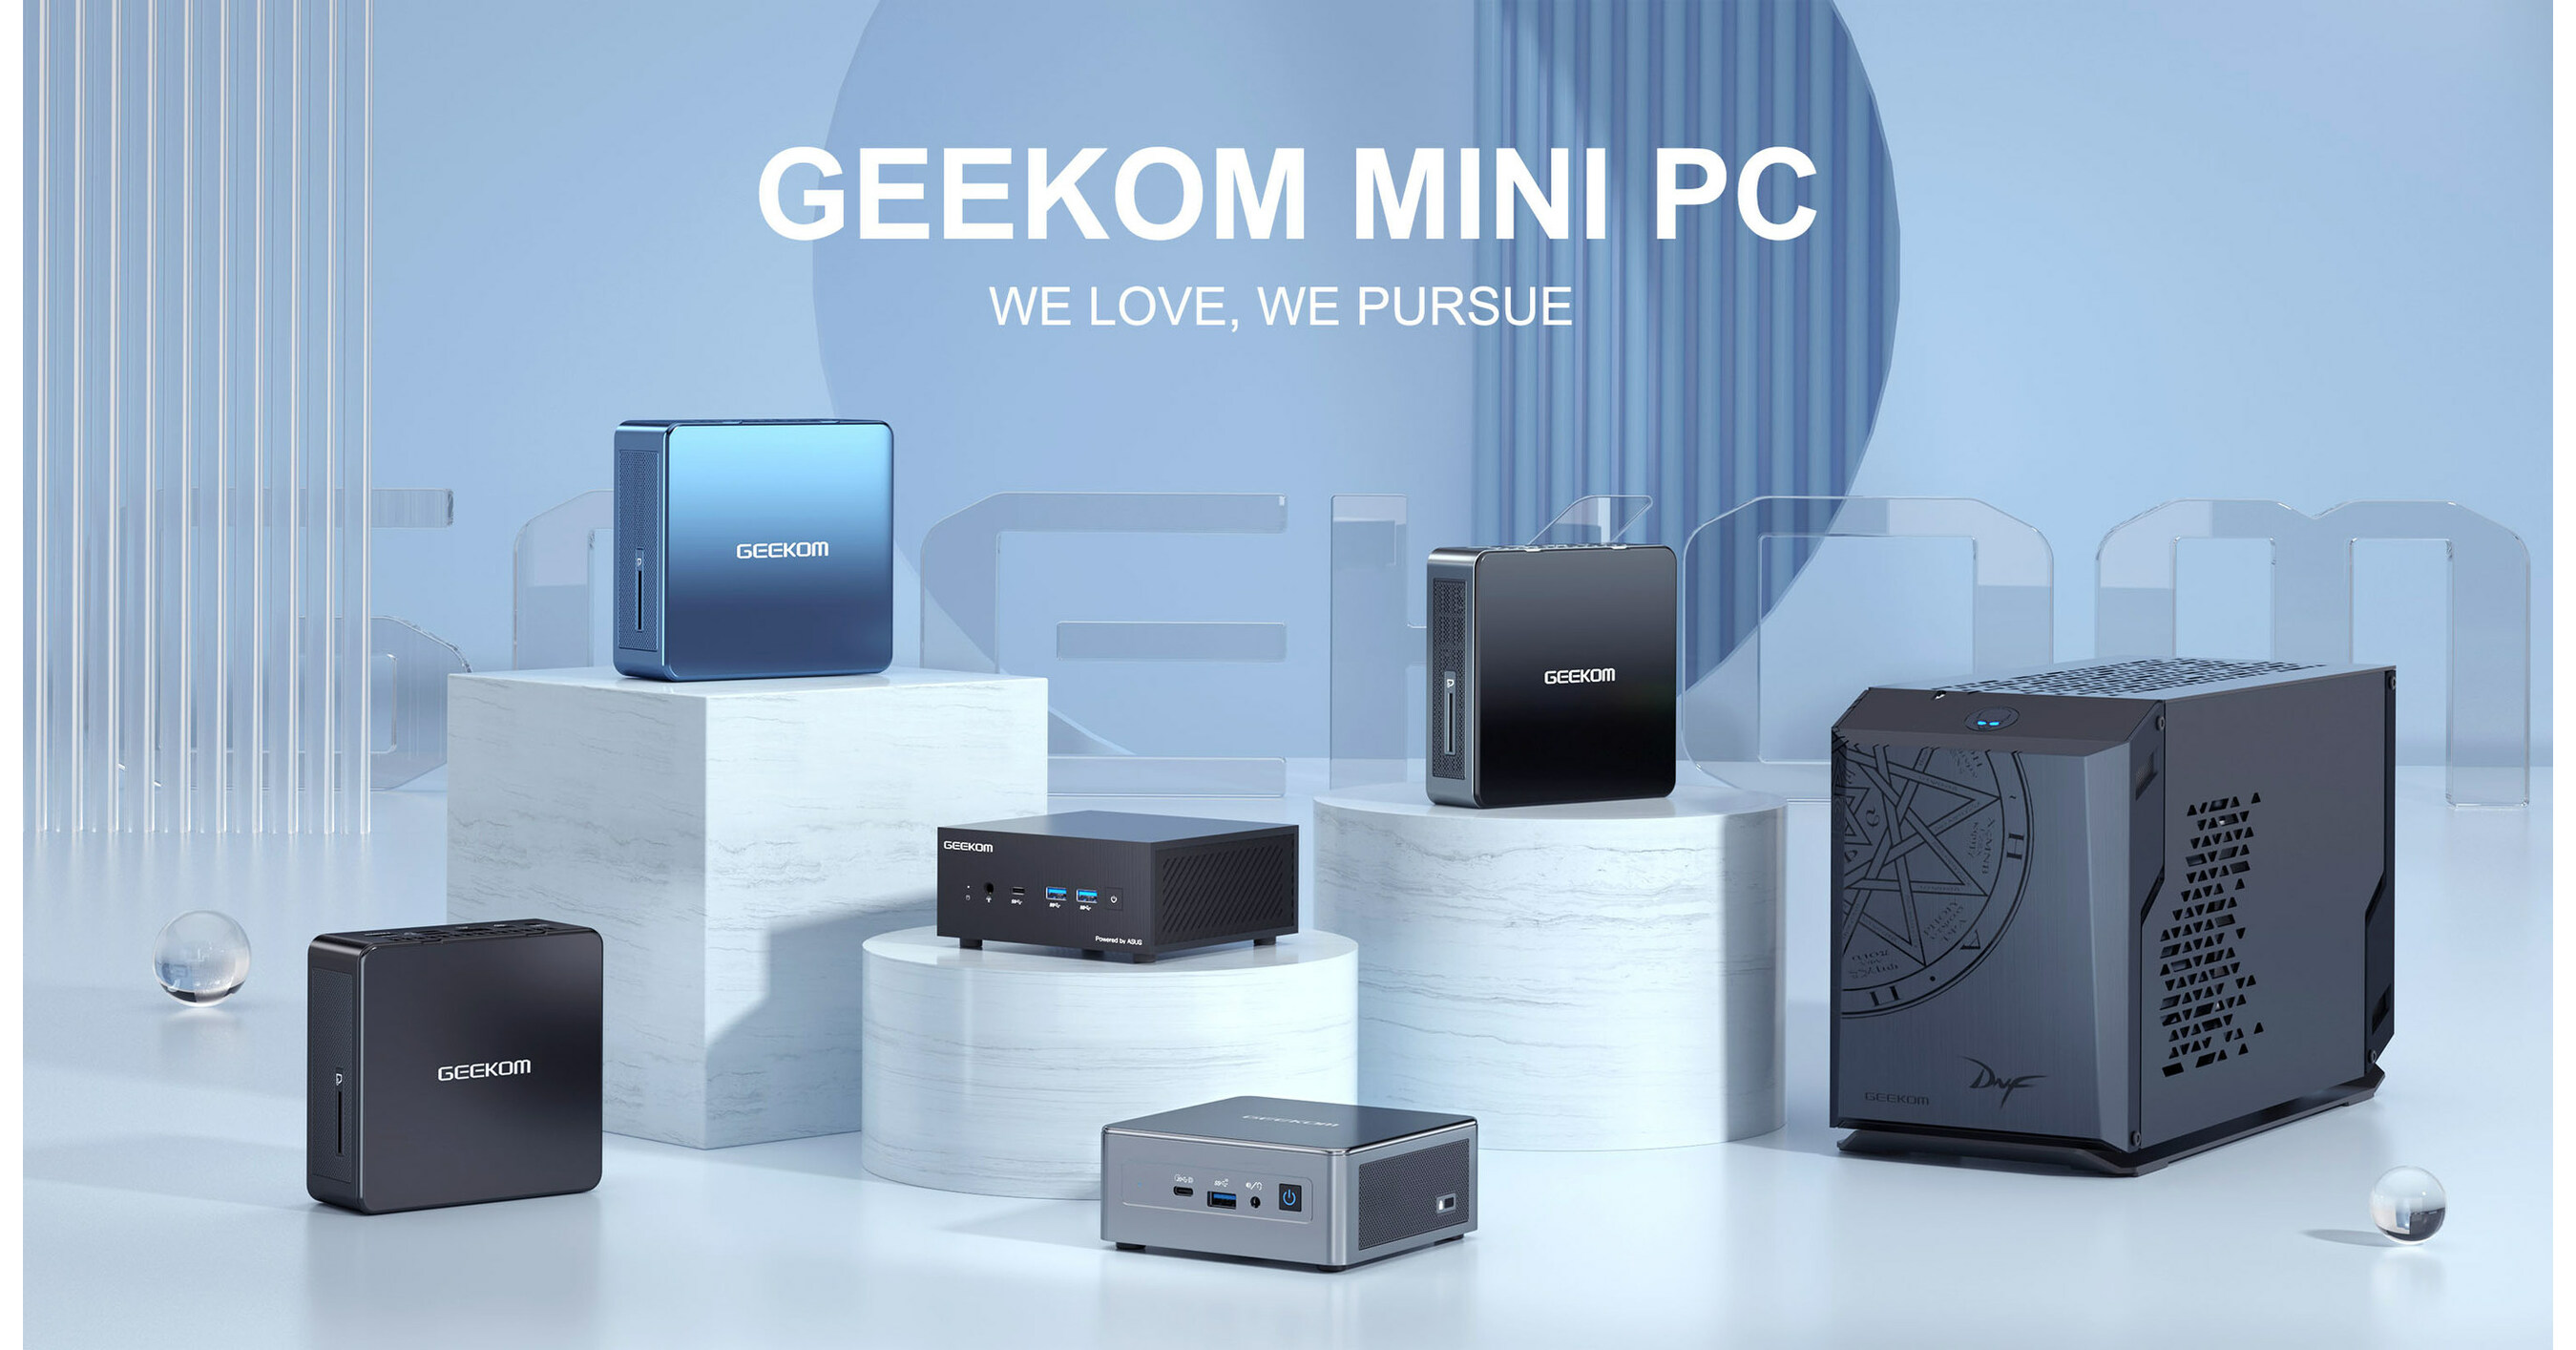 Geekom Debuts Mini PC in Japan - Dealerscope